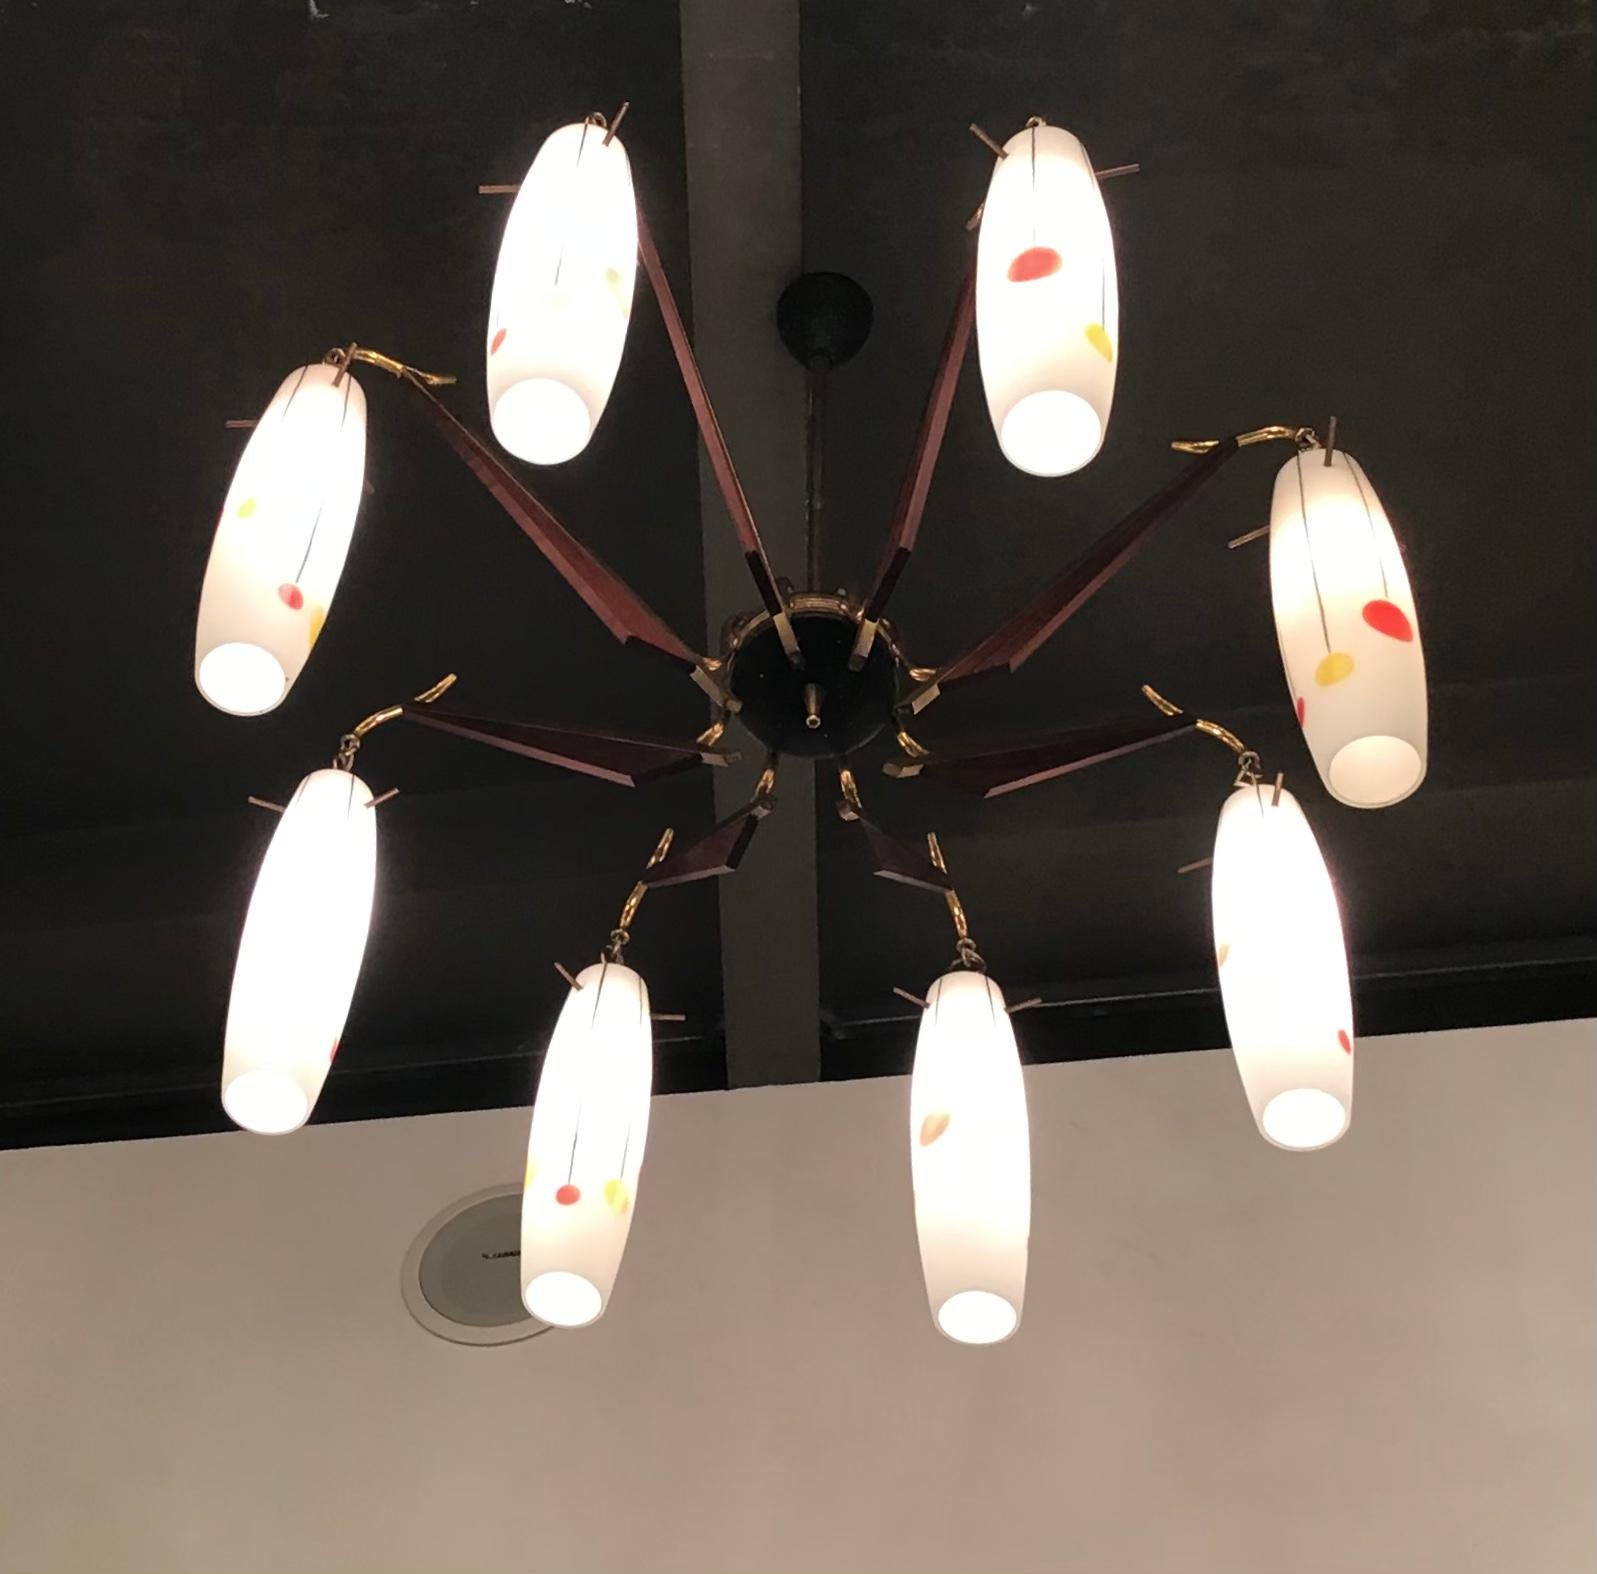 Stilnovo -Particolare lampadario a 8 luci, con vetri bianchi dipinti a mano con motivi geometrici in rosso, giallo e nero, colori tipici degli anni 50 .
Perfetto stato di conservazione 